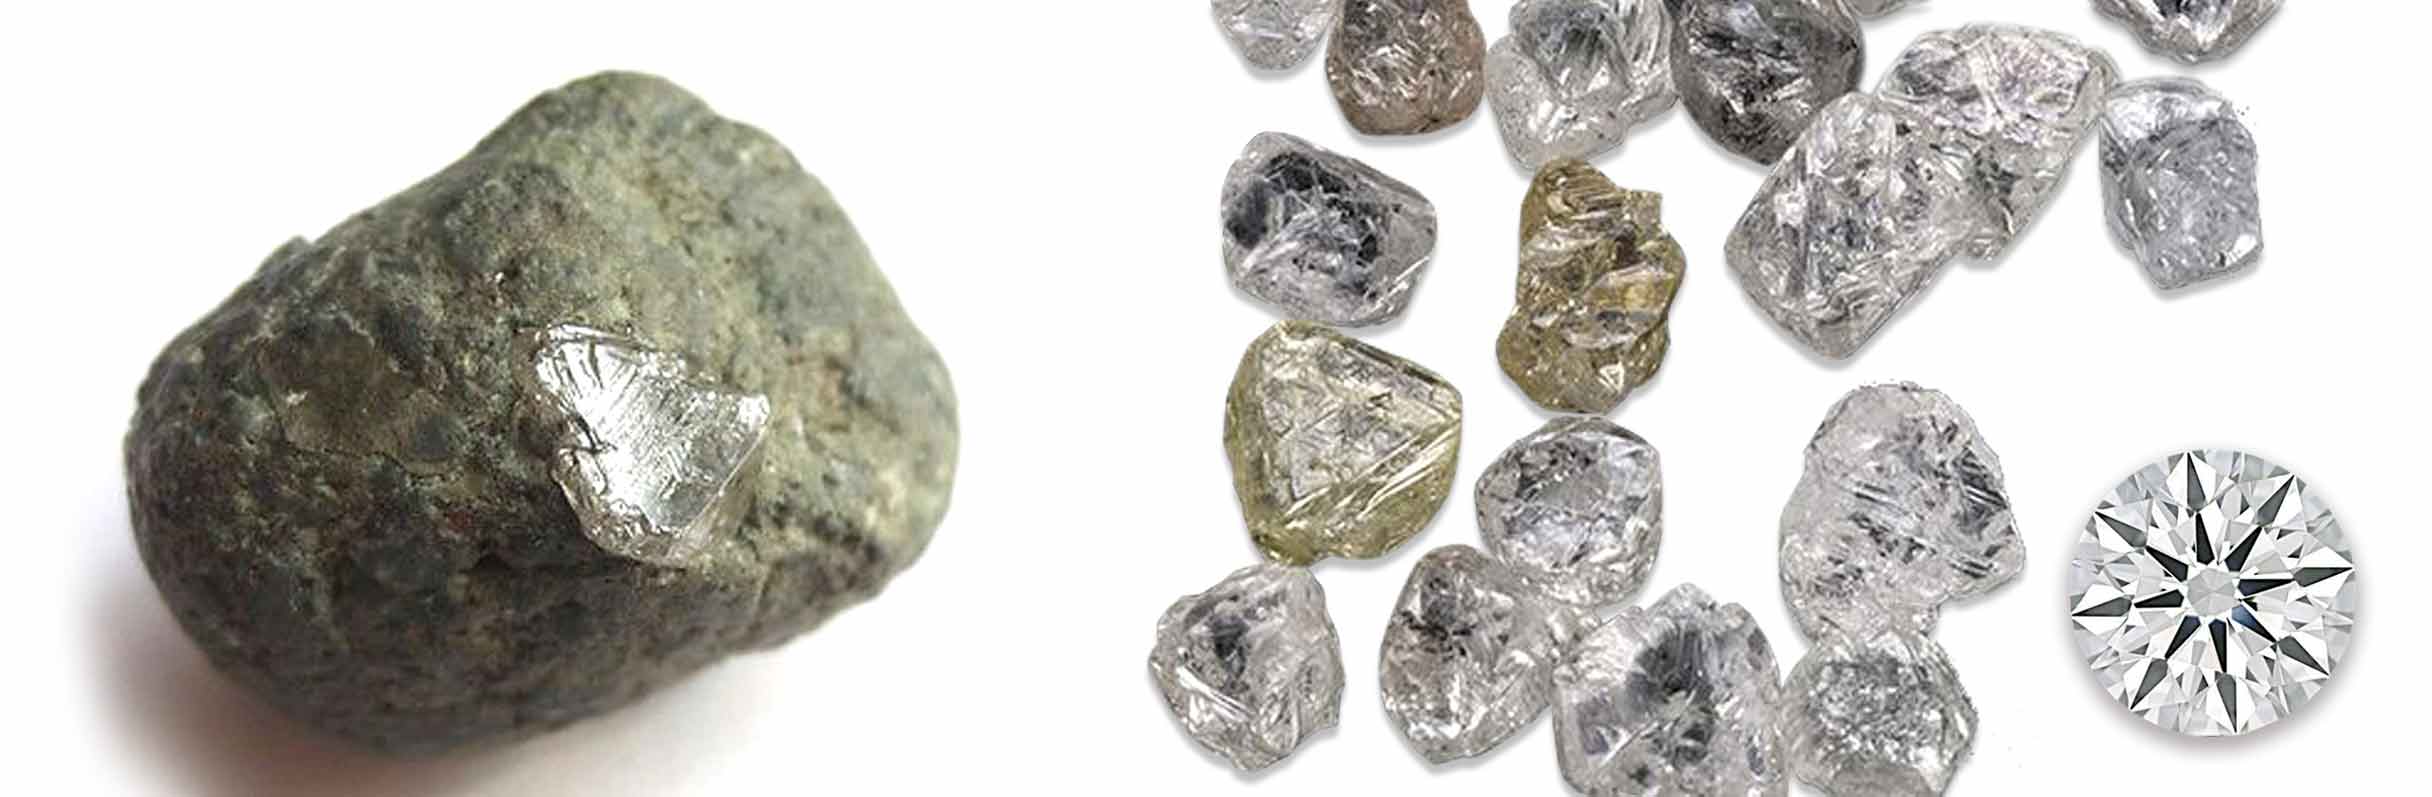 Кимберлит, неограненные природные алмазы и ограненный бриллиант